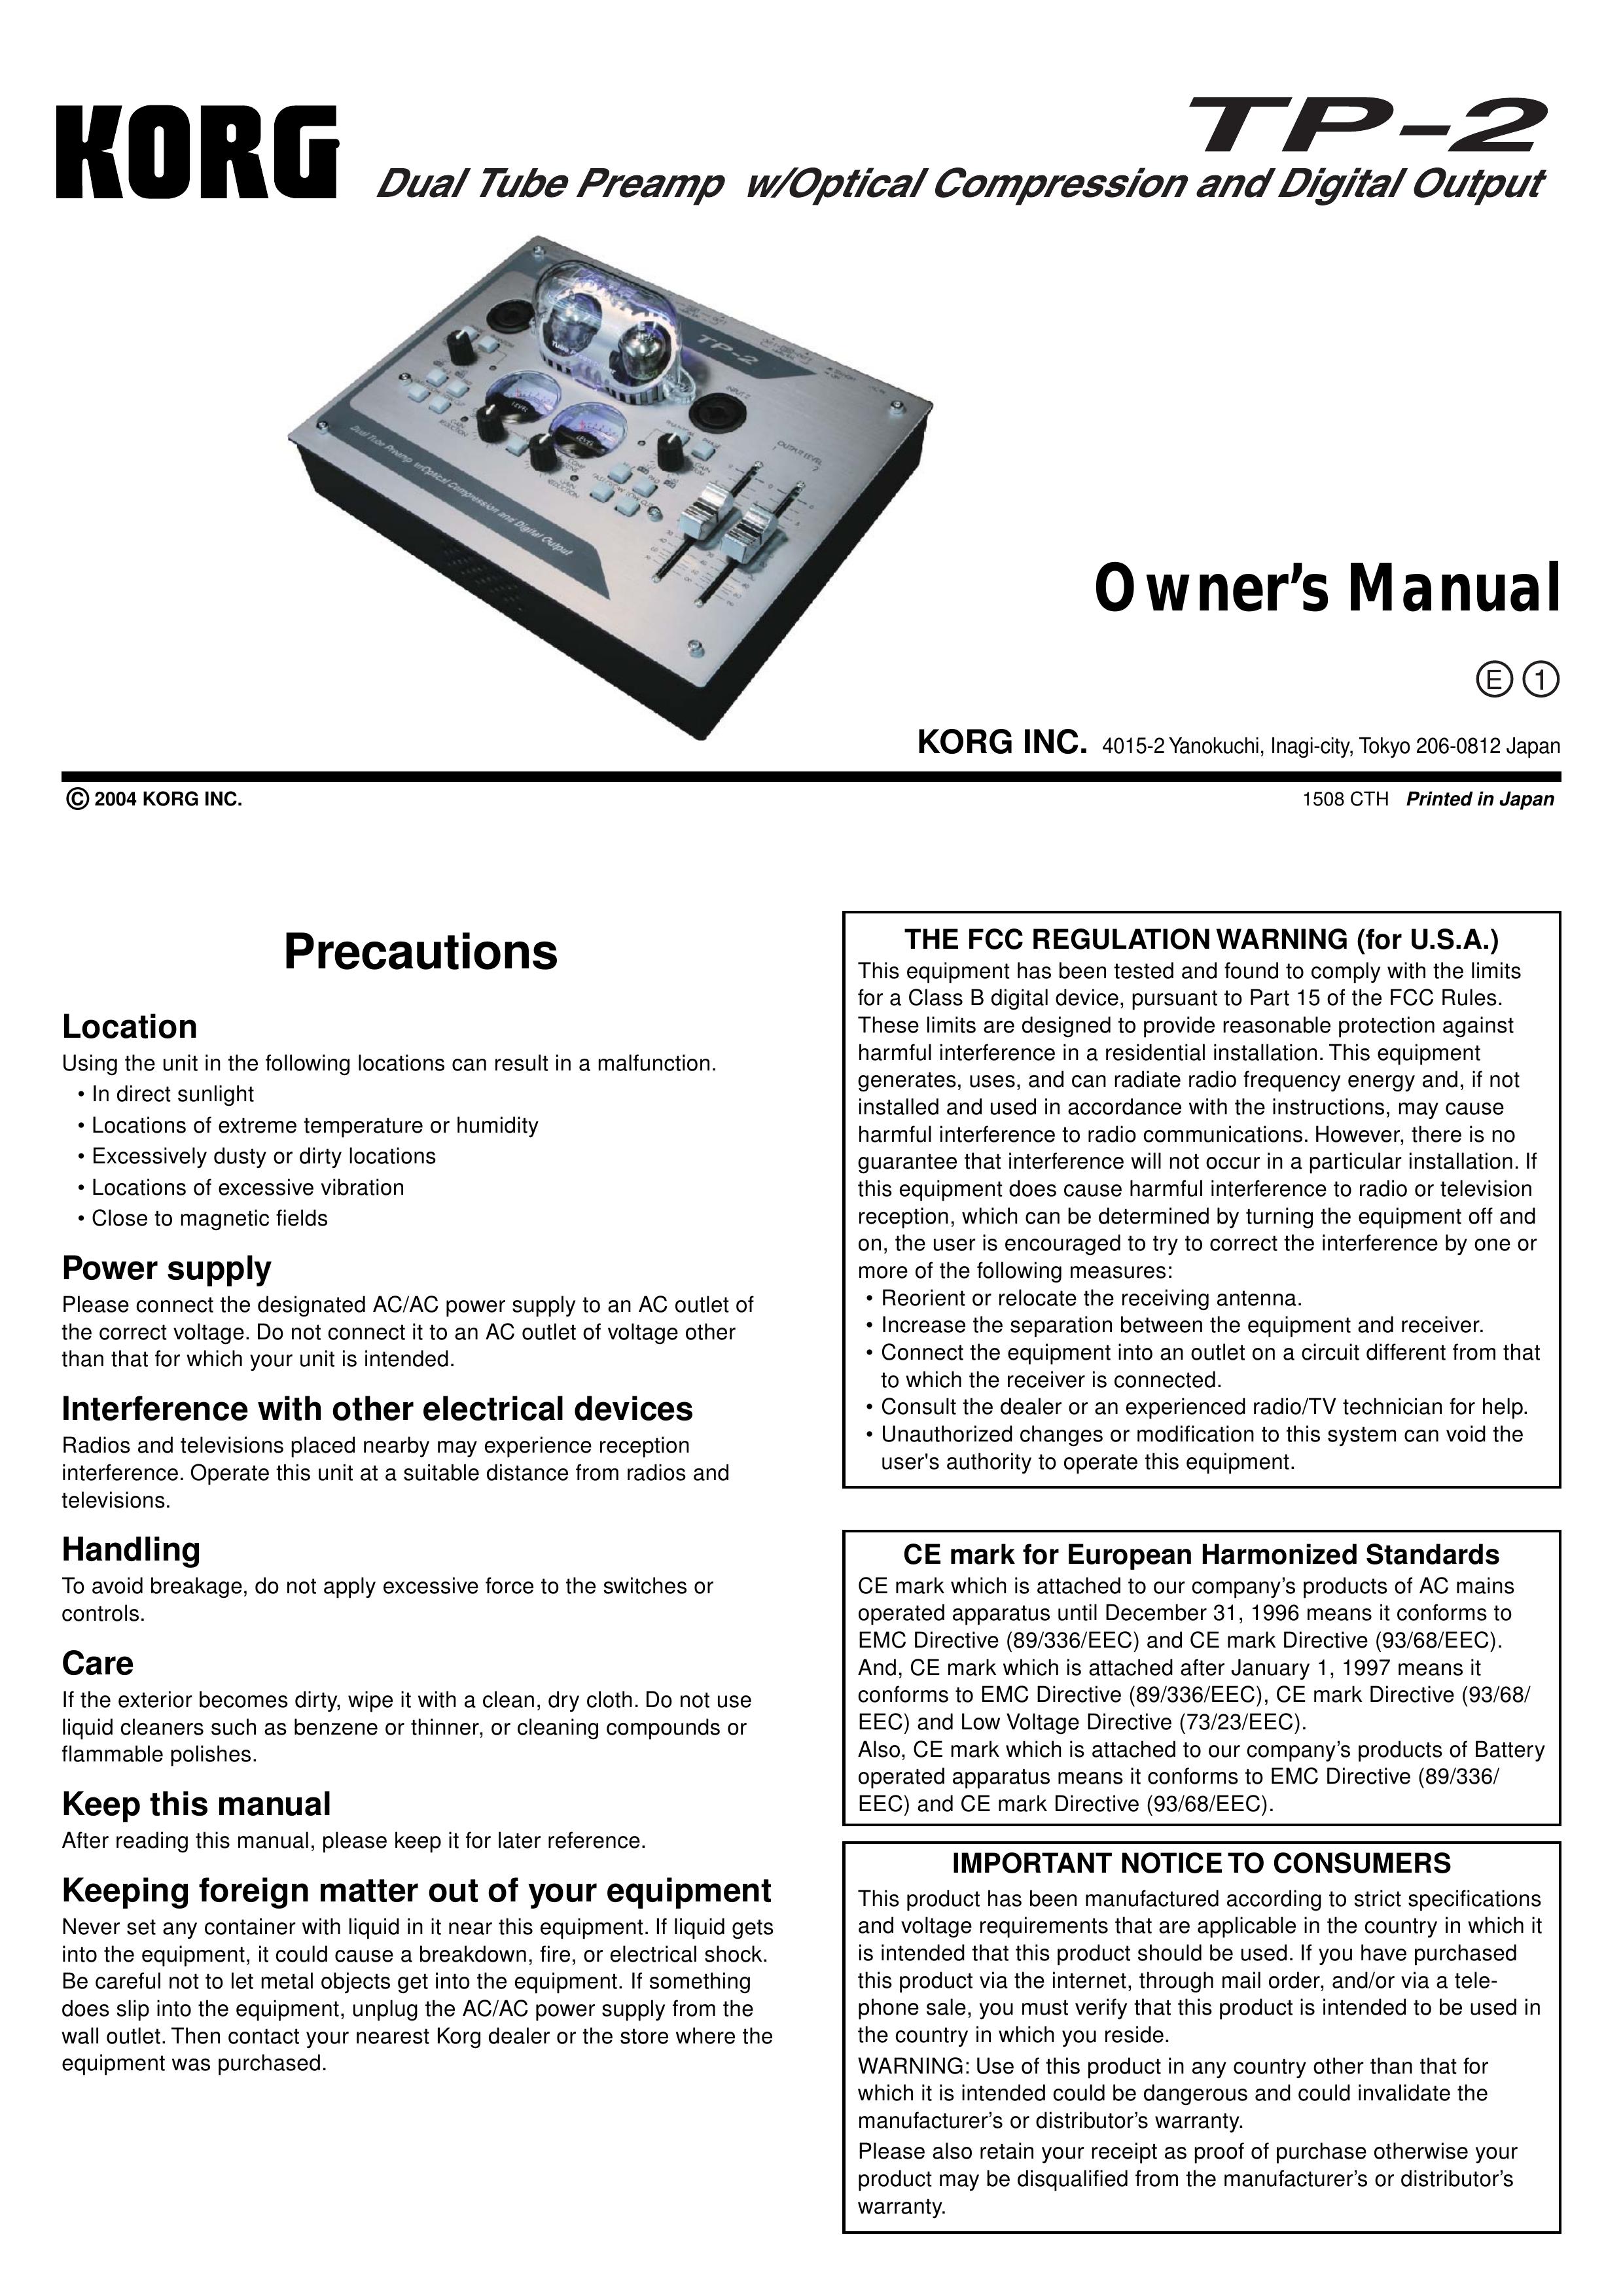 Korg TP-2 Musical Instrument User Manual